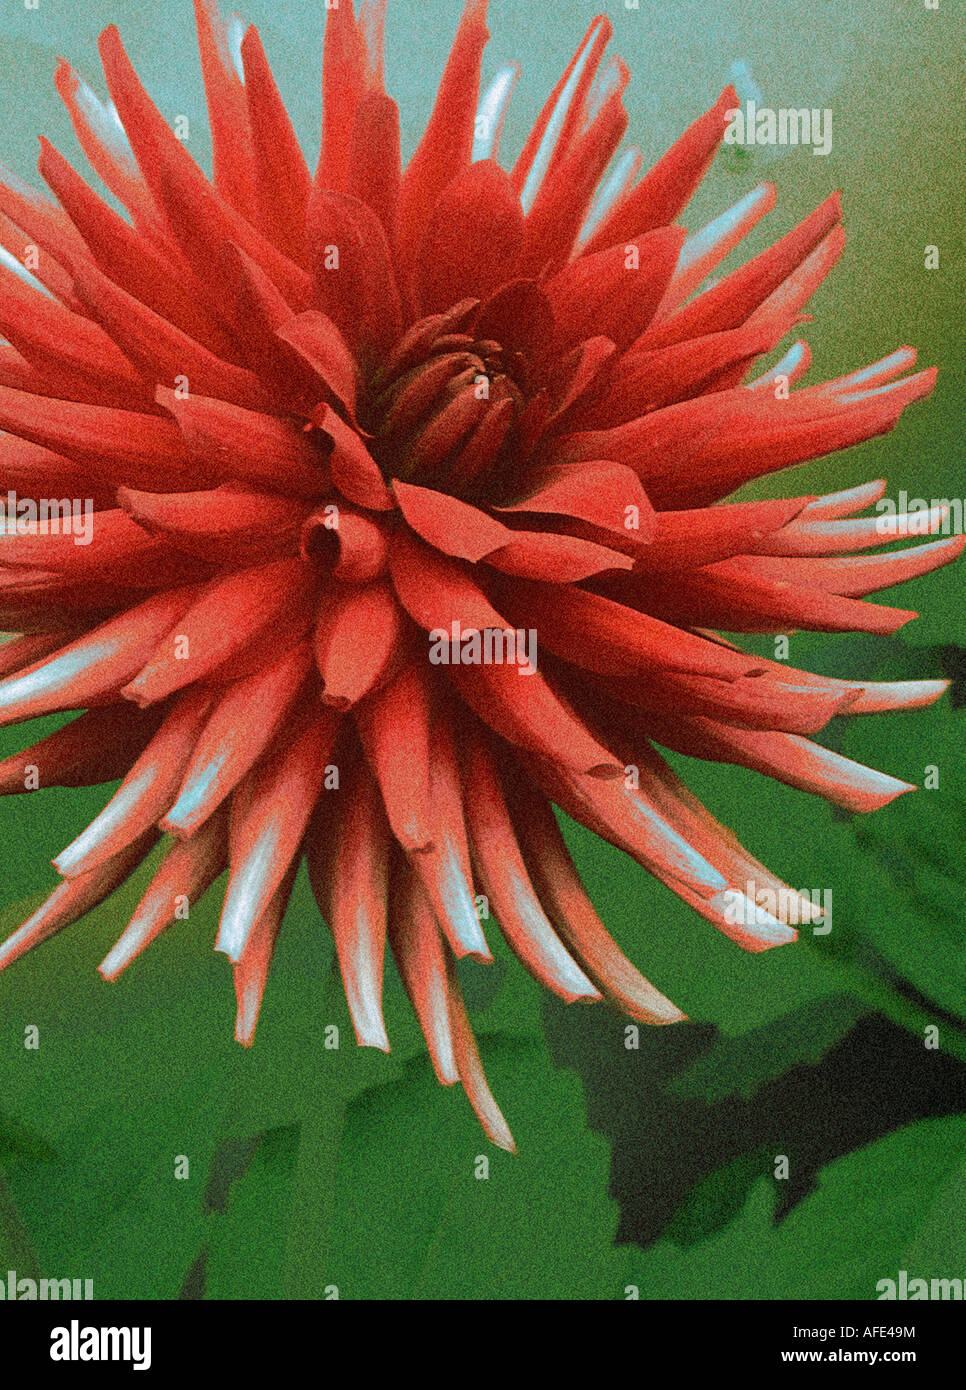 Foto-Illustration der roten "Kaktus" Dahlia Blume mit einem grünen Hintergrund Stockfoto